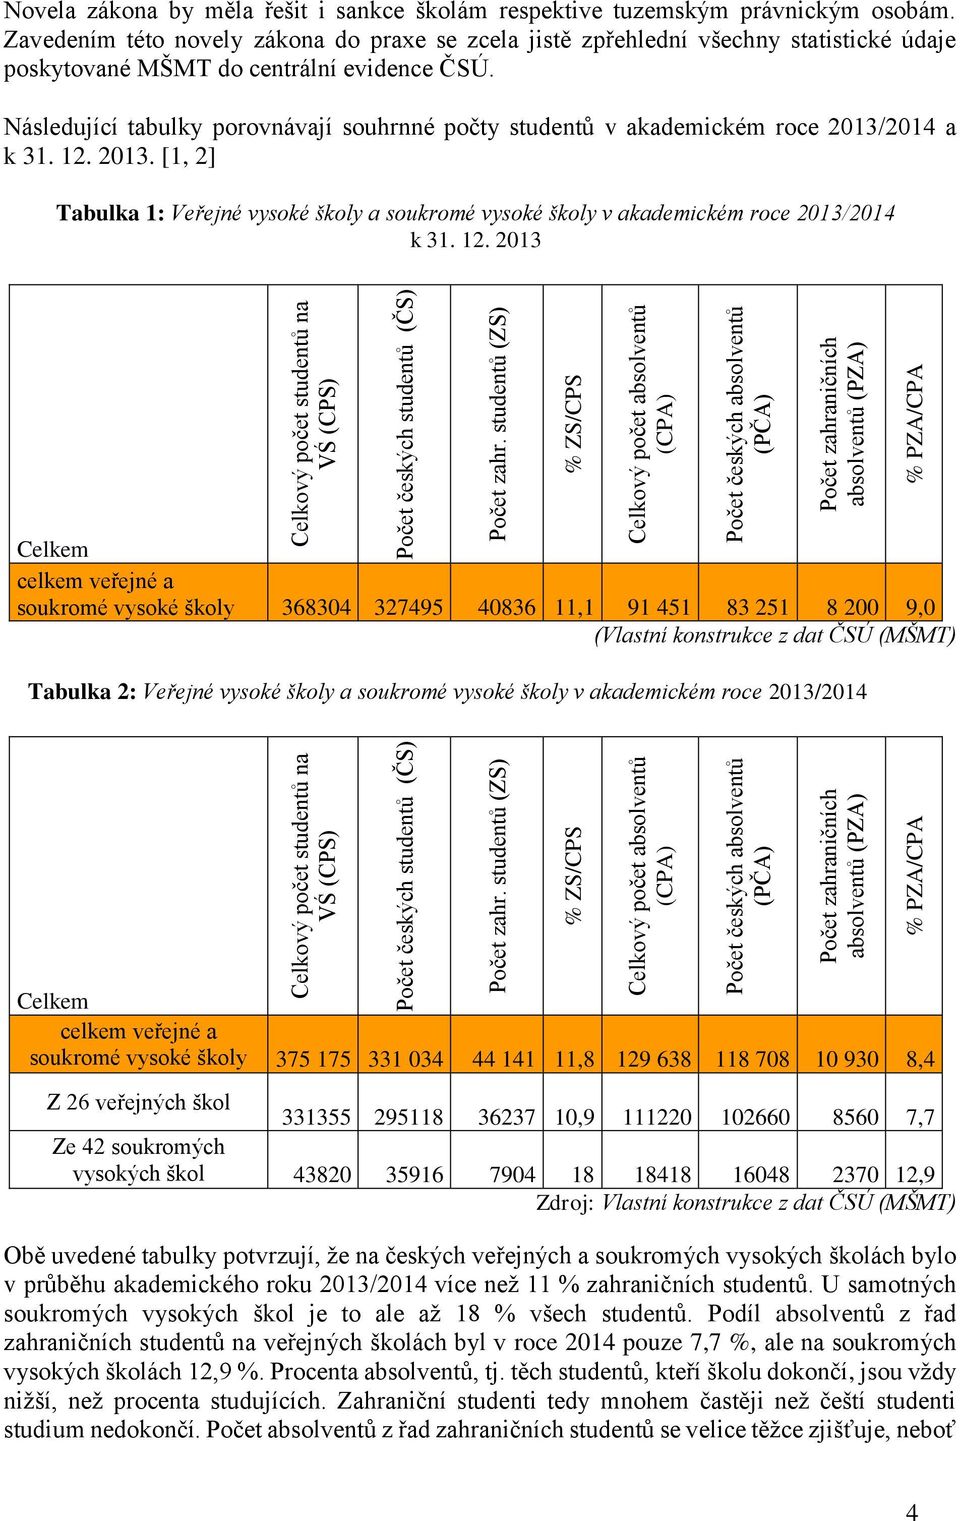 Následující tabulky porovnávají souhrnné počty studentů v akademickém roce 2013/2014 a k 31. 12. 2013. [1, 2] Tabulka 1: Veřejné vysoké školy a soukromé vysoké školy v akademickém roce 2013/2014 k 31.